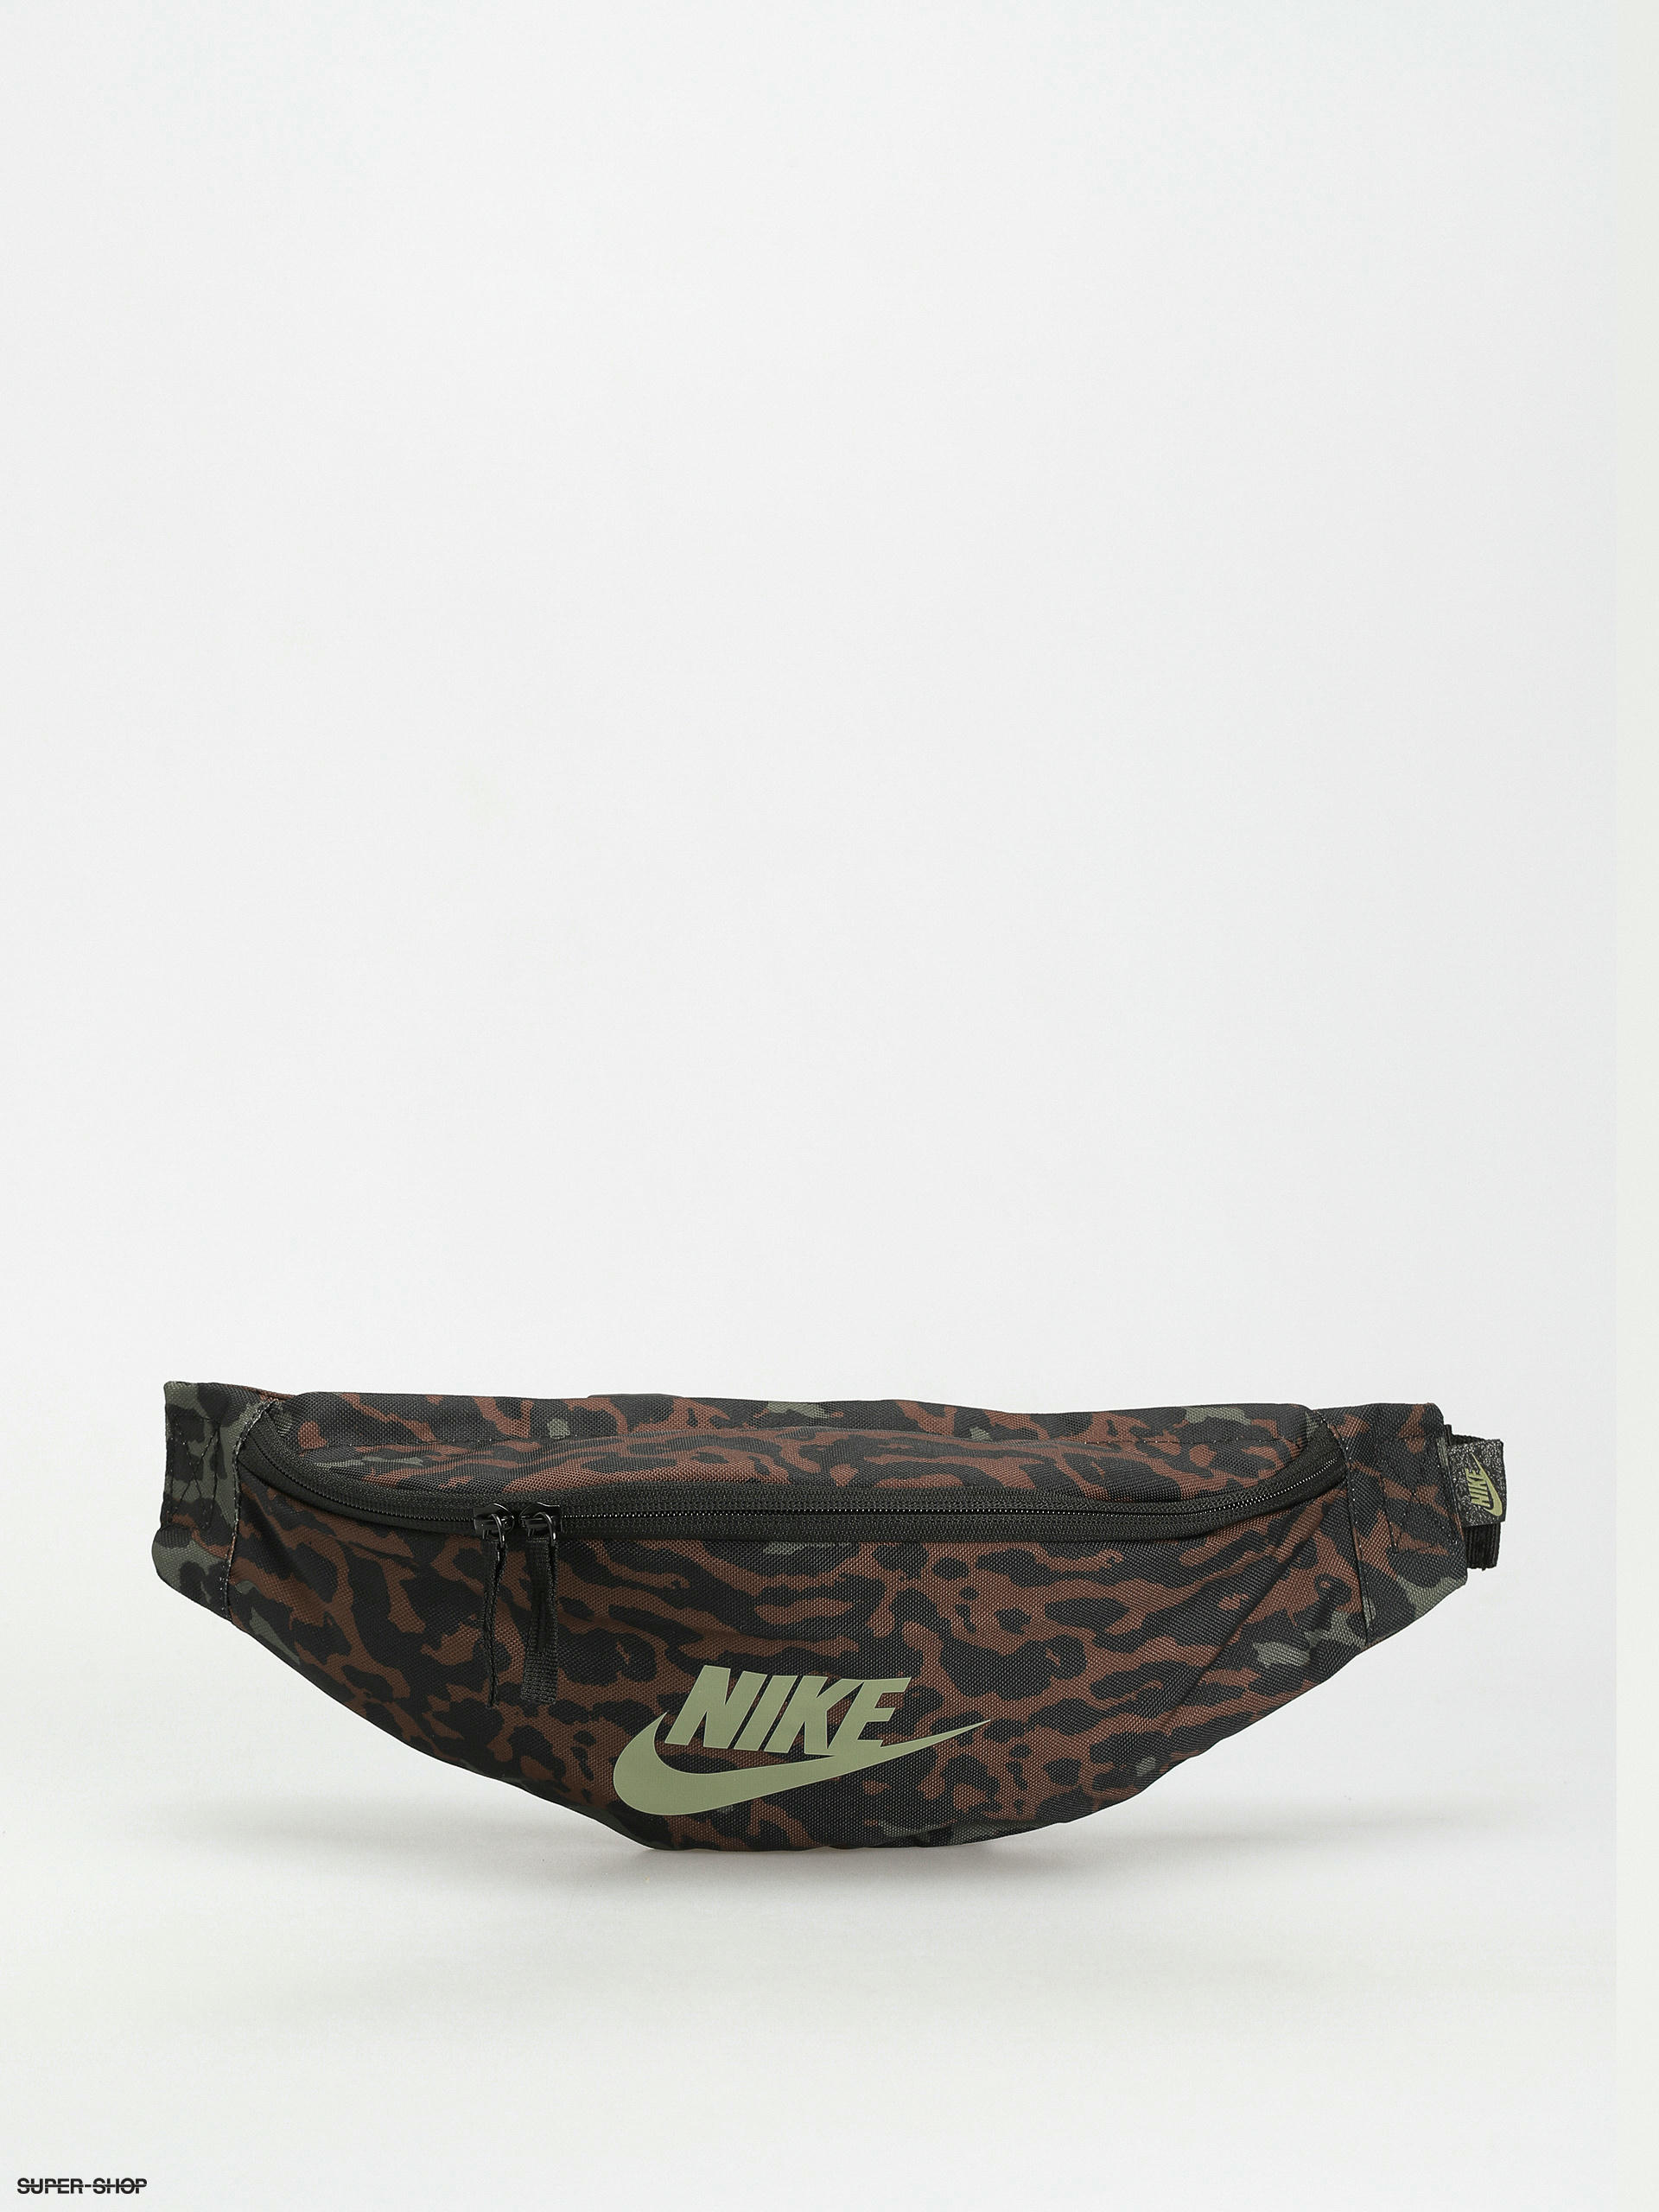 Printed Unisex Nike College Bag at Rs 260/piece in Vadodara | ID:  2851546101488